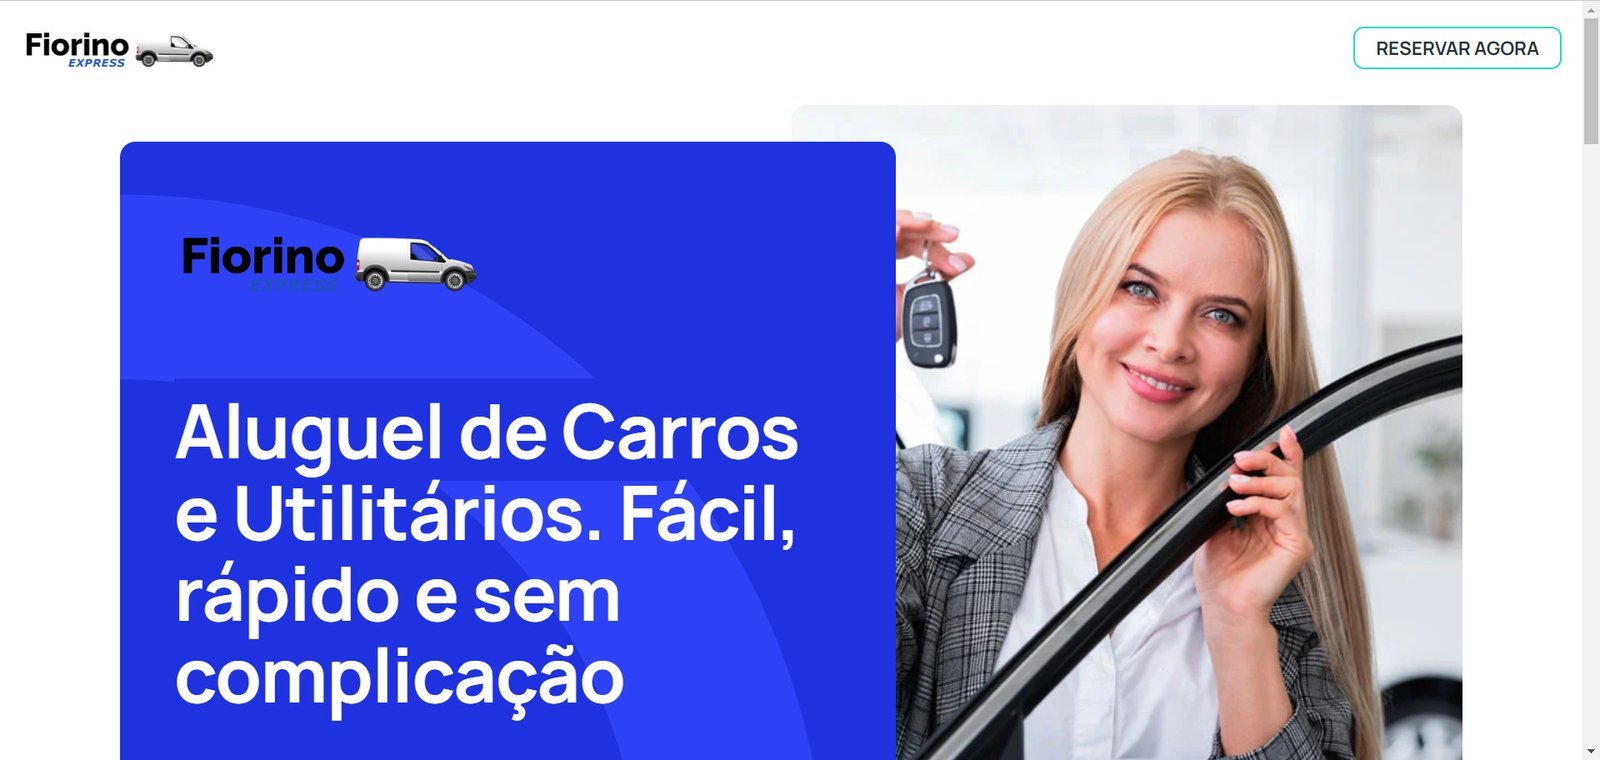 Fiorino Express - Aluguel de Carros Curitiba